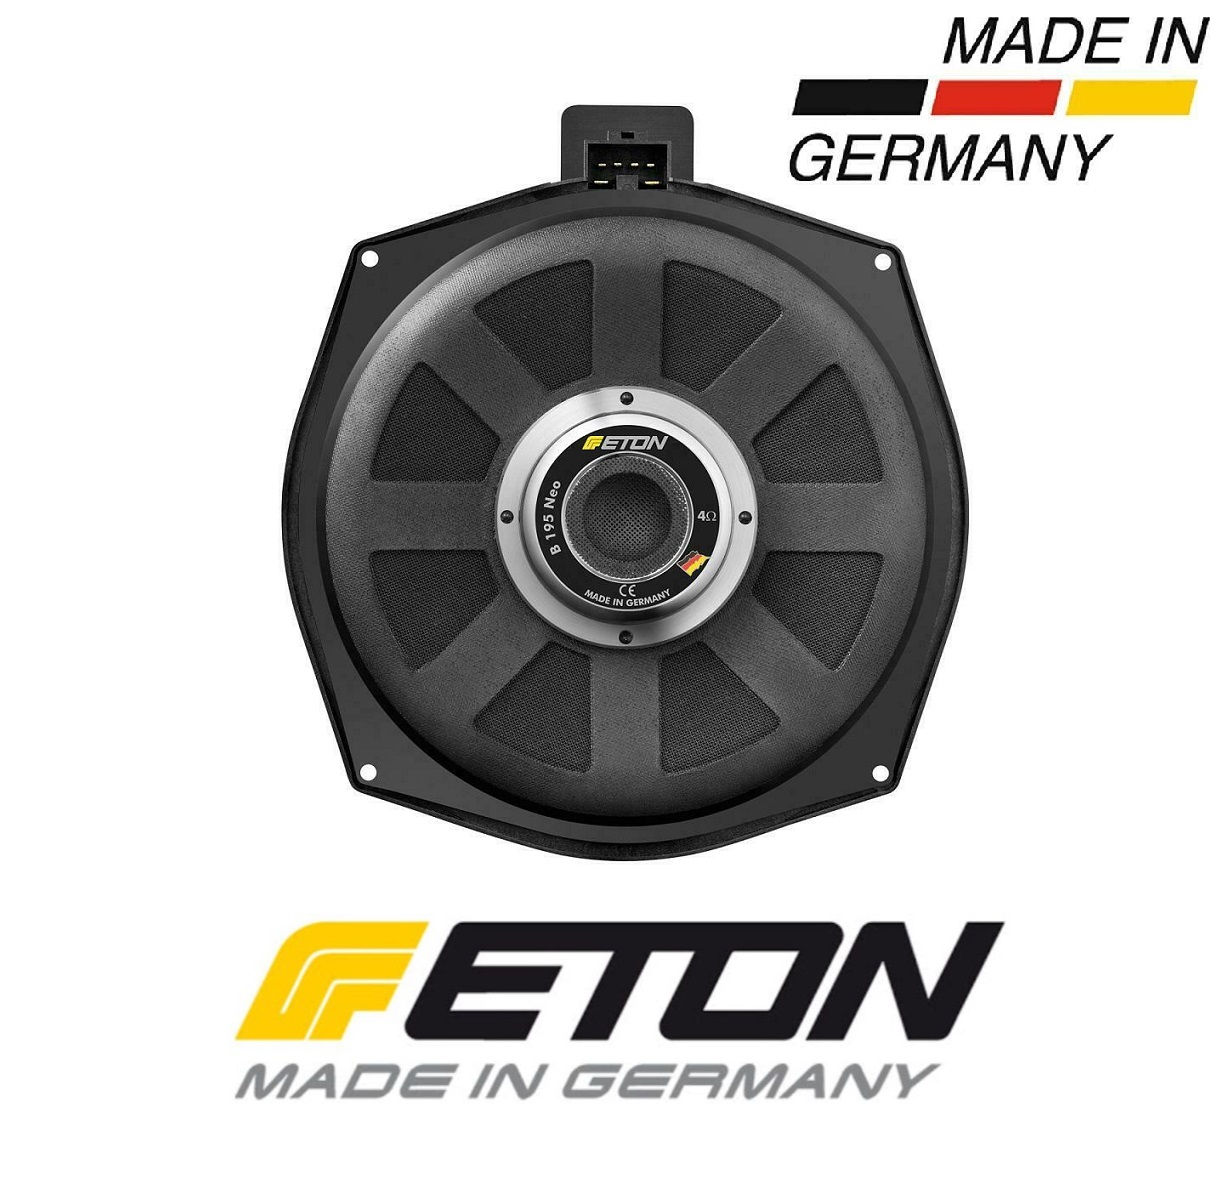 ETON B195 Neo BMW Untersitzbass  für BMW Fahrzeuge E81,E82,E87,E88,E90,E91,E92,E93,E63,E64,E83,E70 usw.